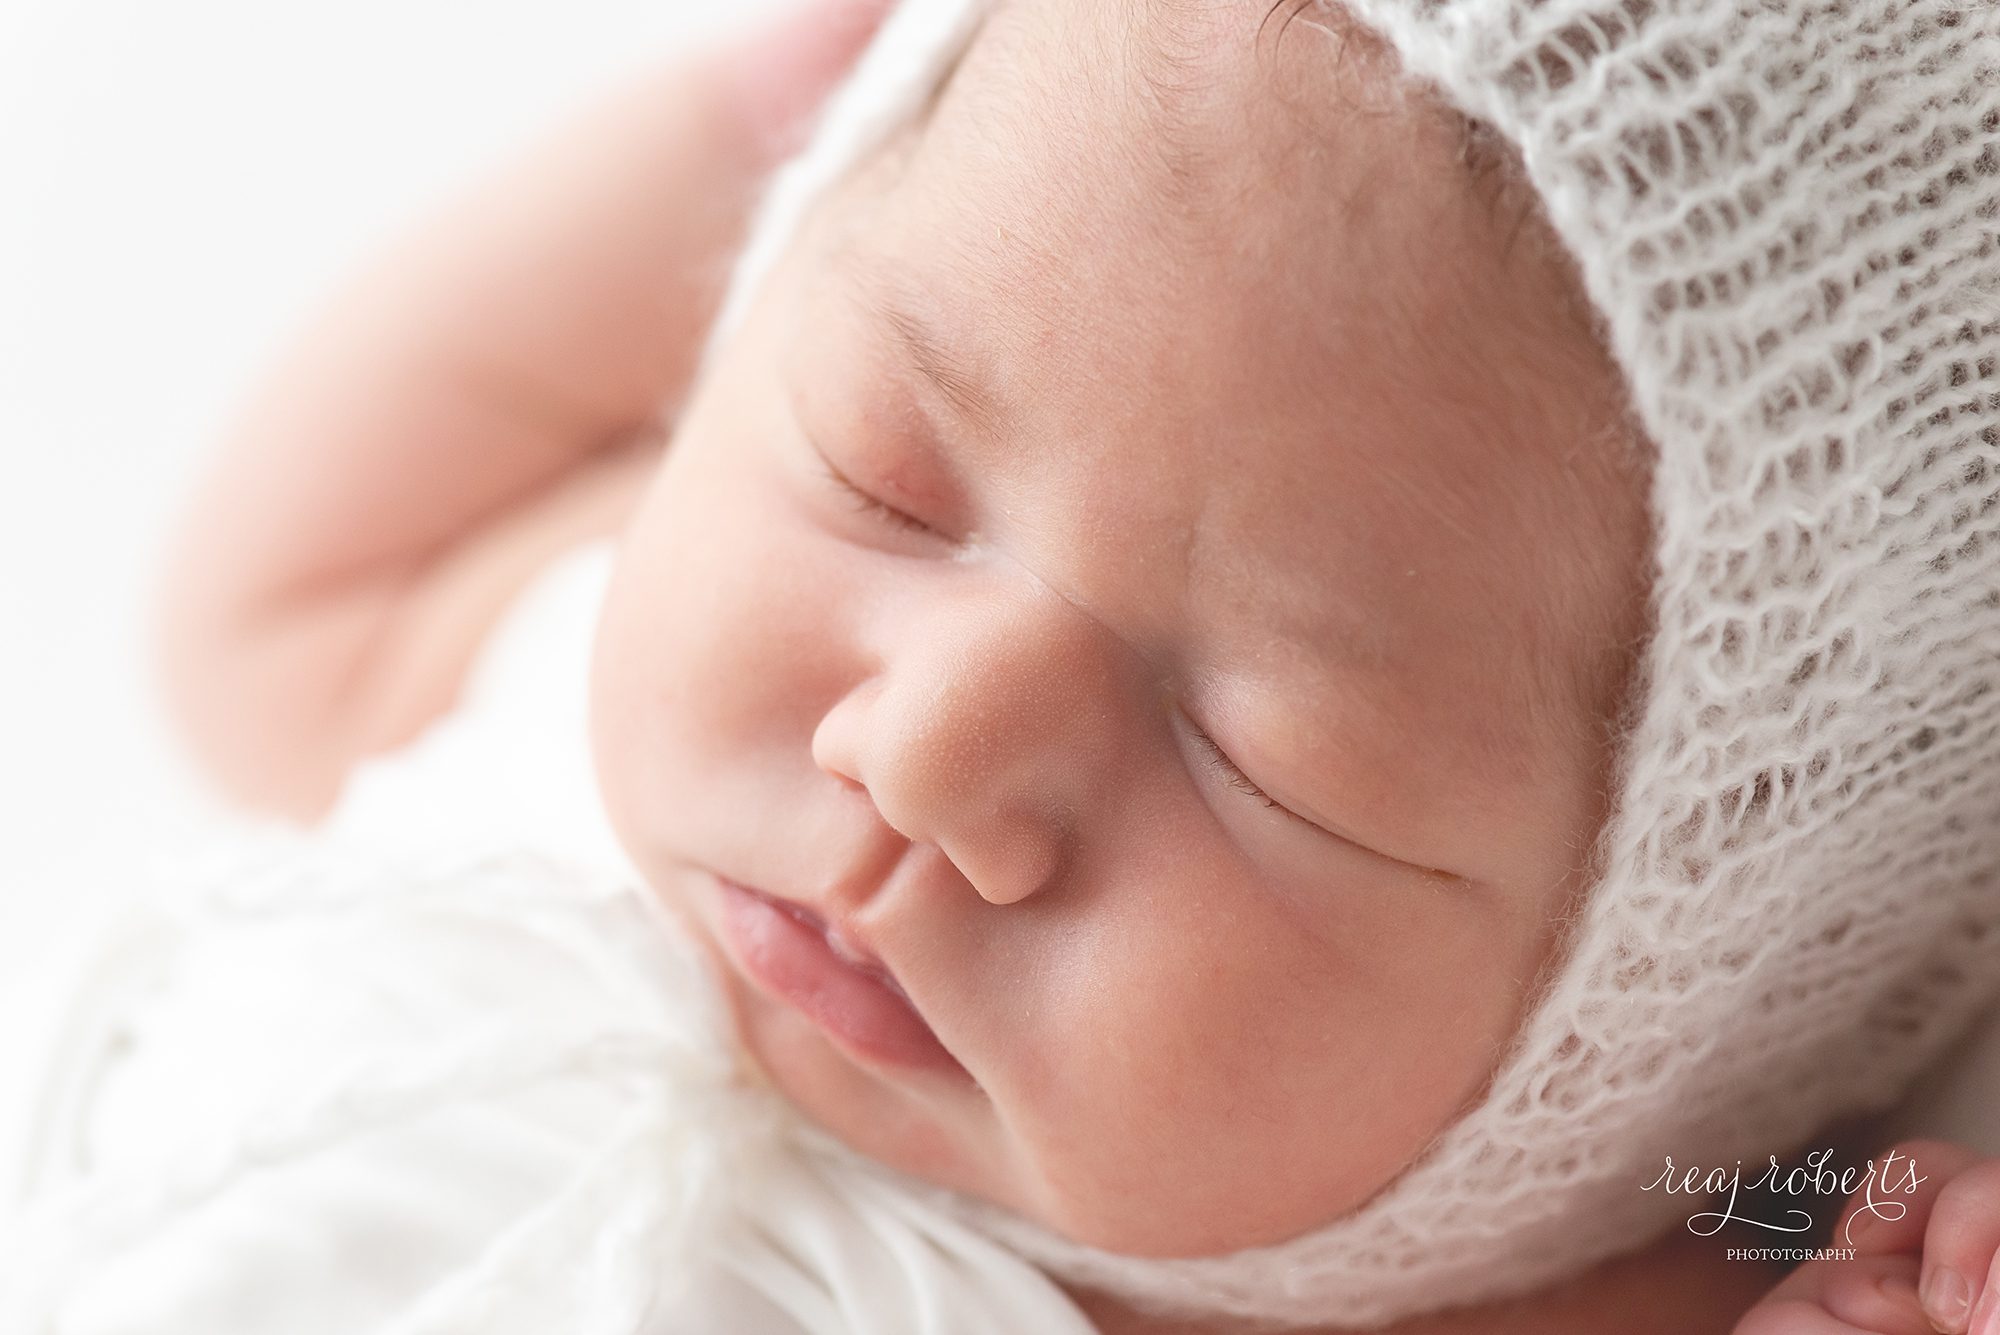 newborn face close up photos | Reaj Roberts Photography